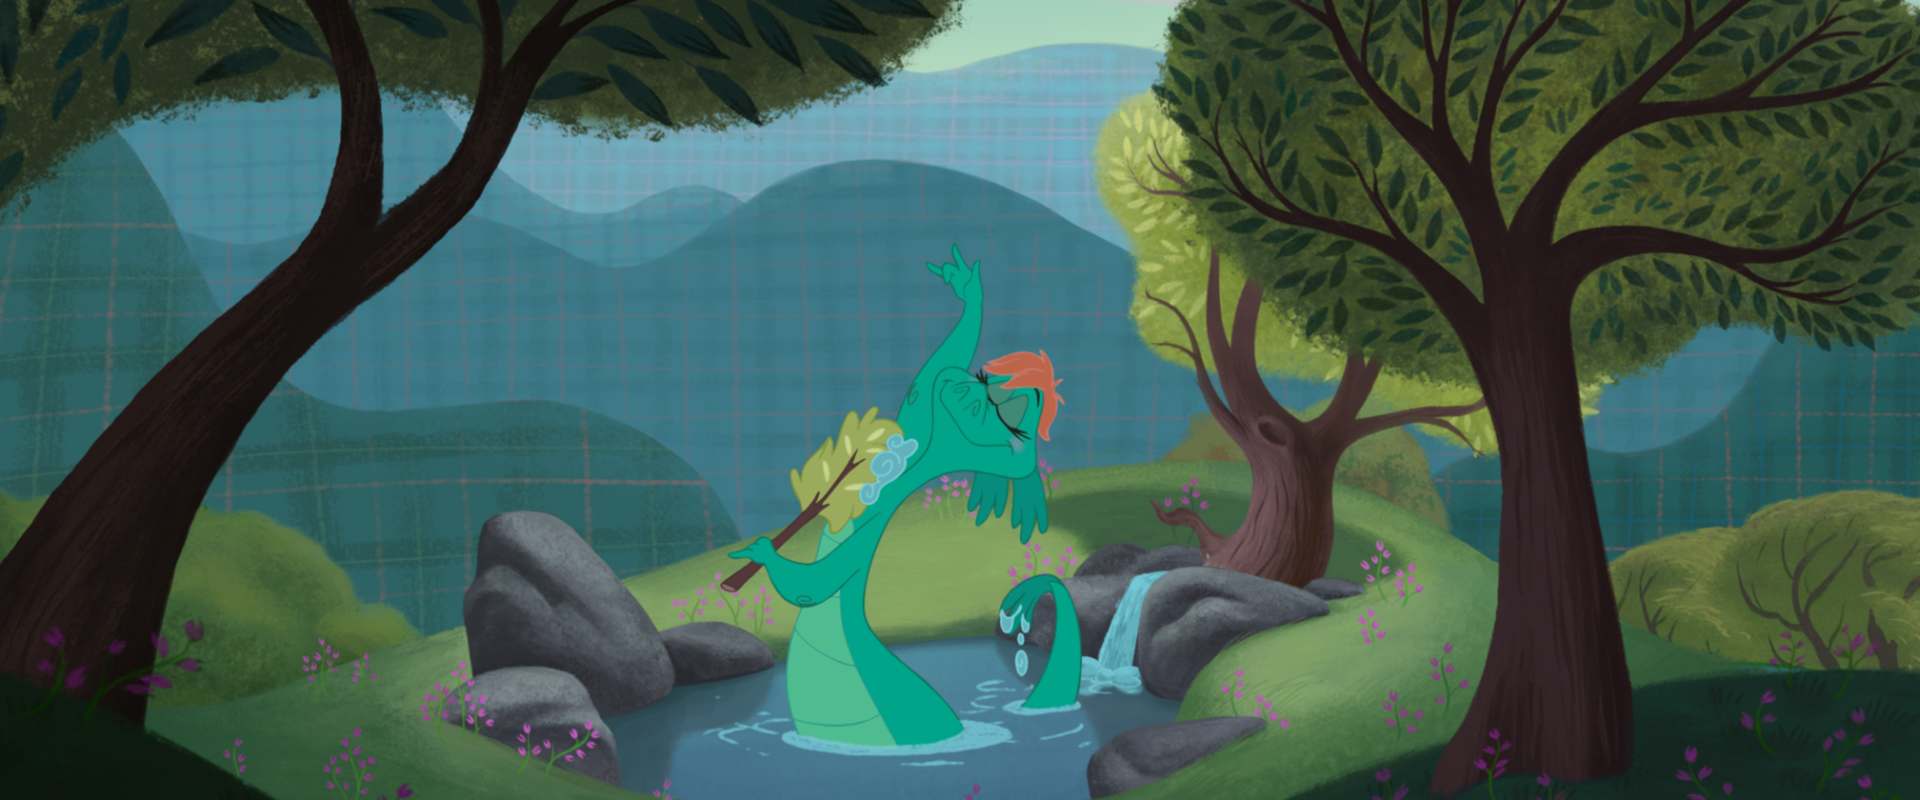 The Ballad of Nessie background 2